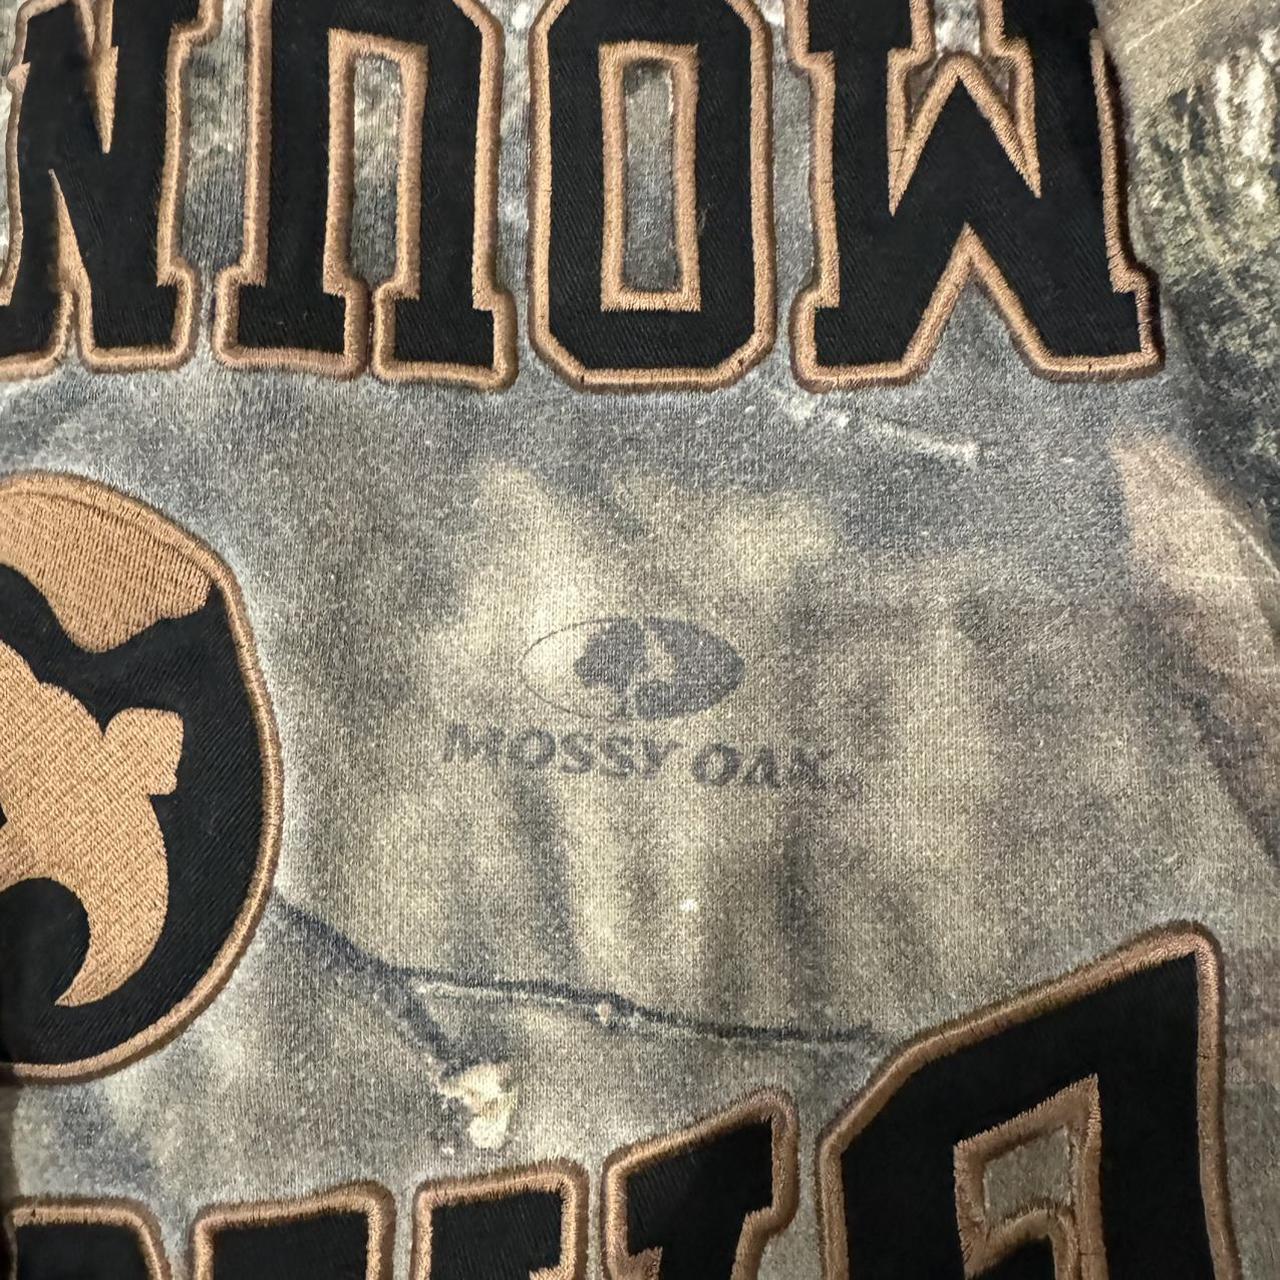 Mossy oak camo gander mountain hoodie size XL - very... - Depop